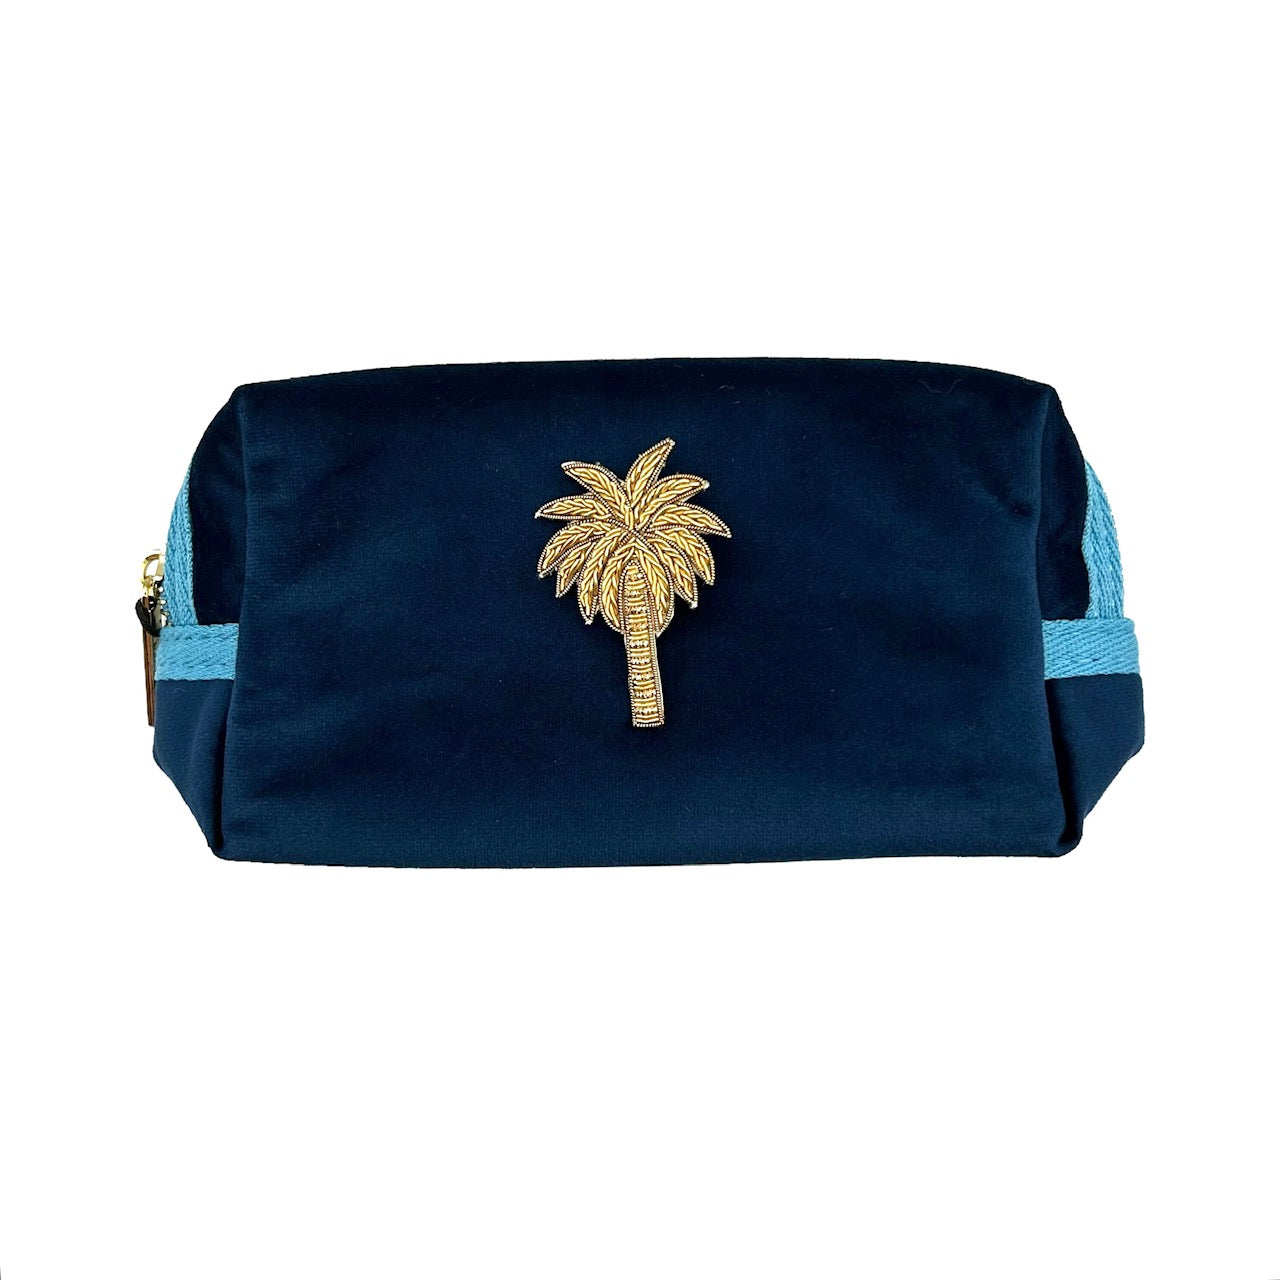 Blue make-up bag & gold palm tree - recycled velvet